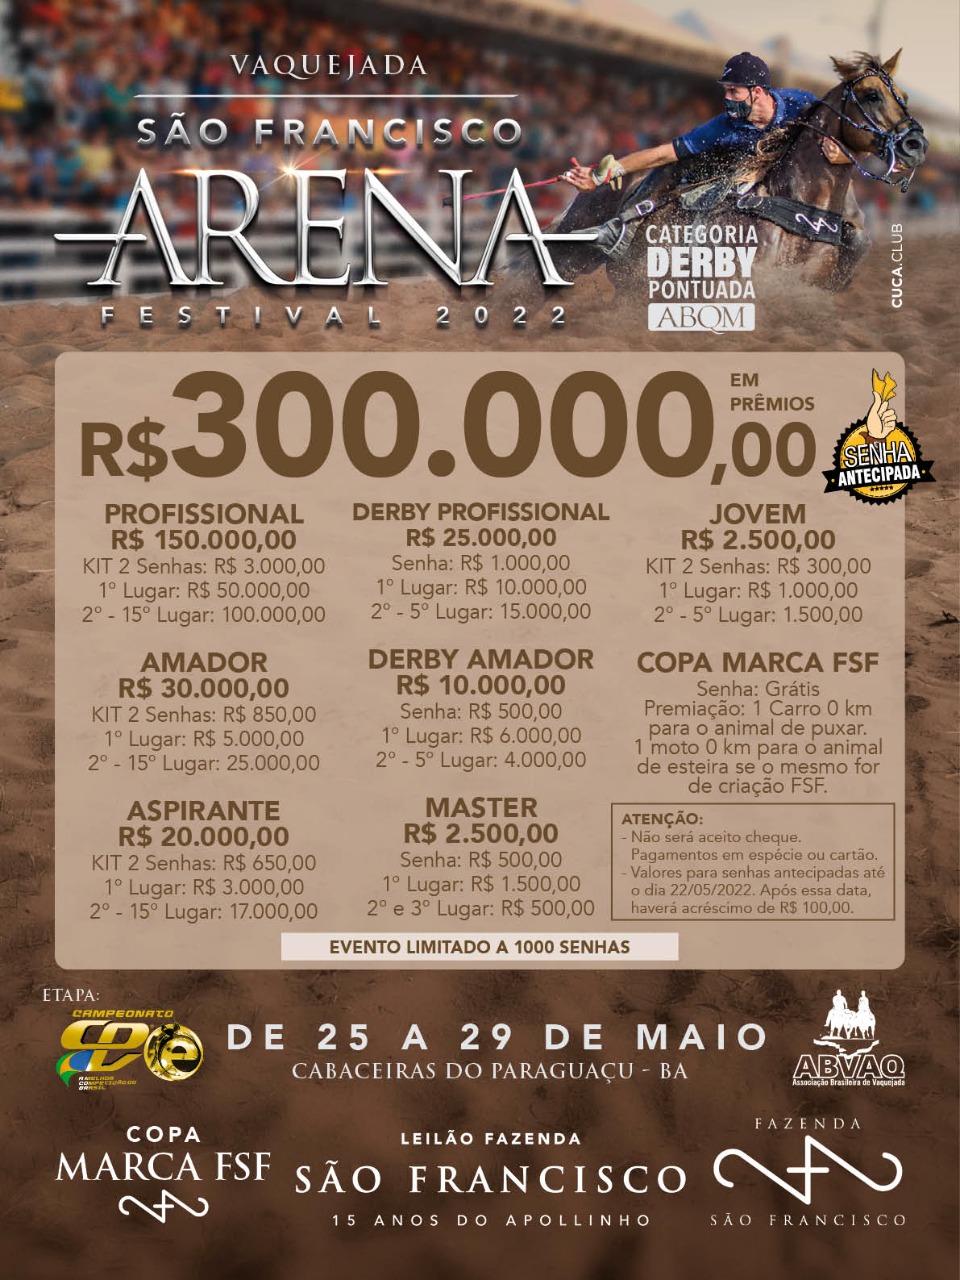 São Francisco Arena Festival 2022